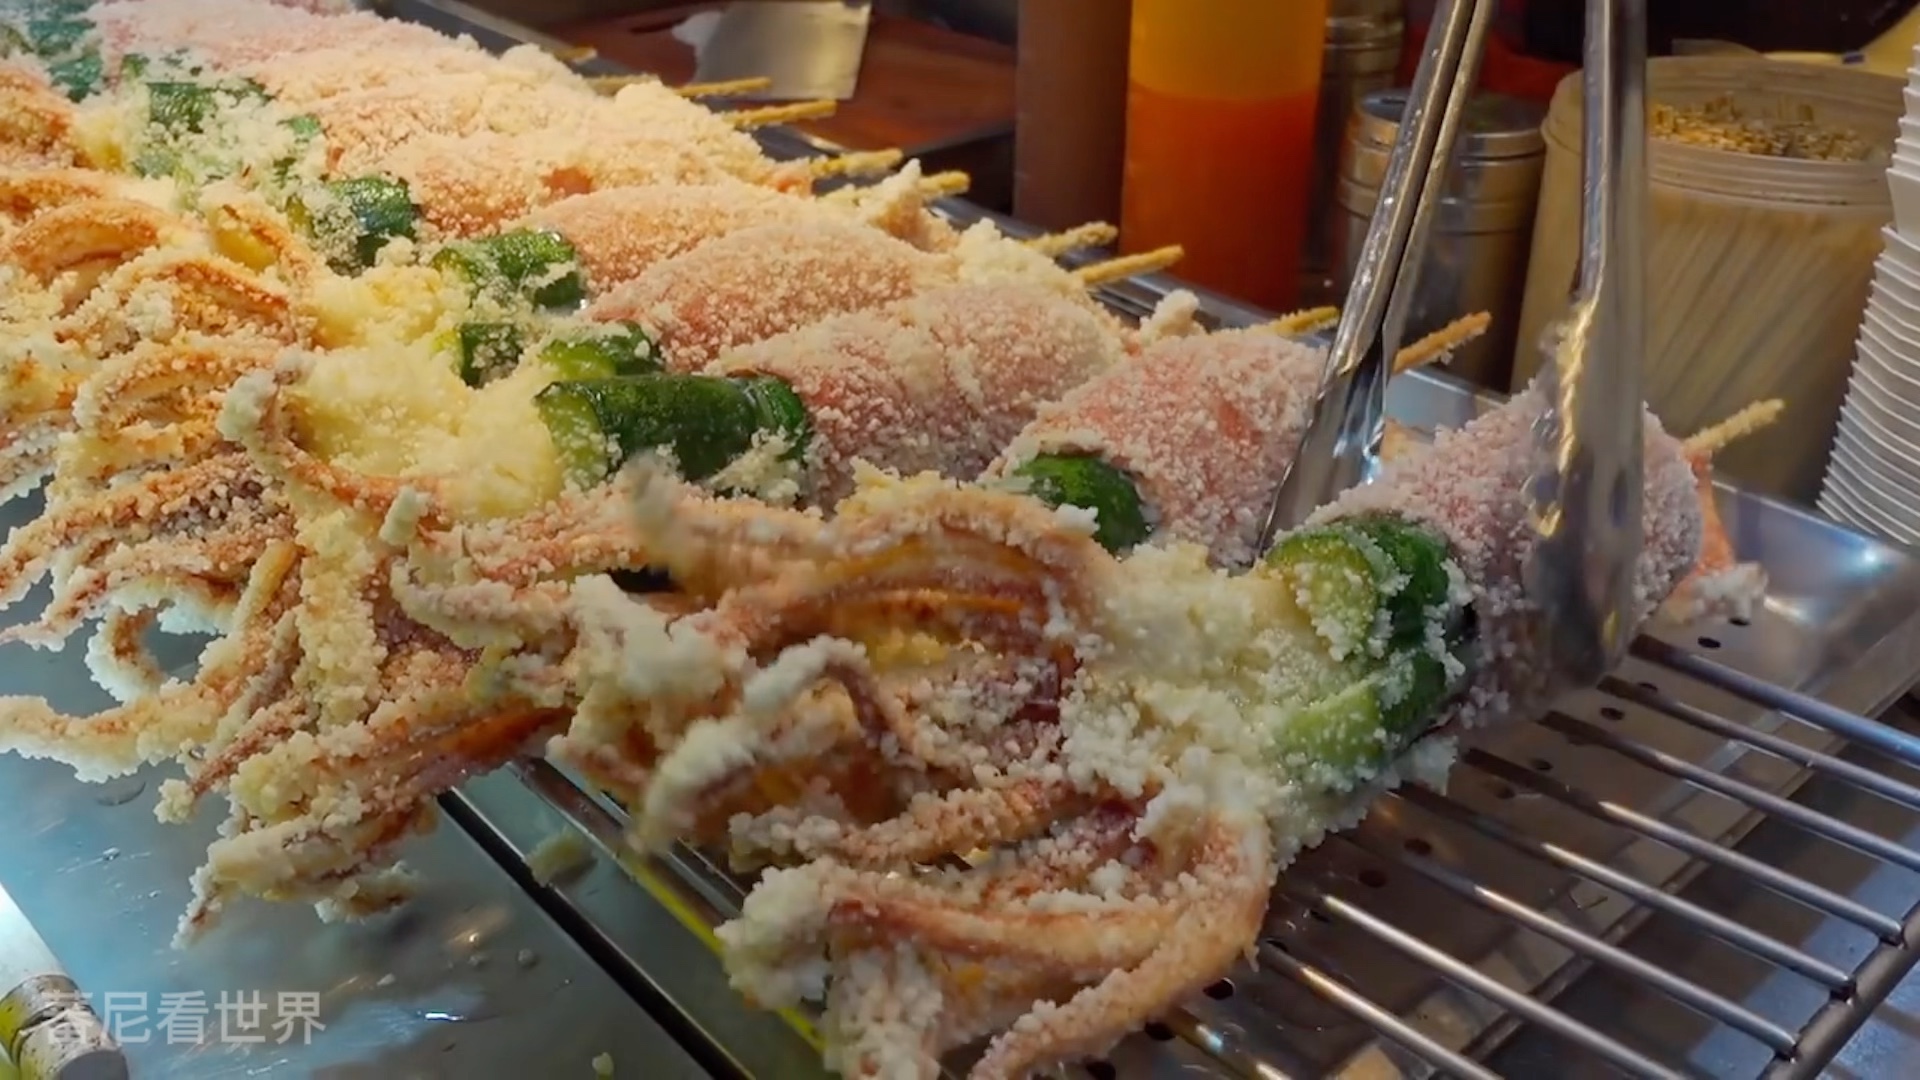 夜市鱿鱼的新吃法,鱿鱼包上黄瓜和白萝卜油炸,就是爆浆脆皮鱿鱼